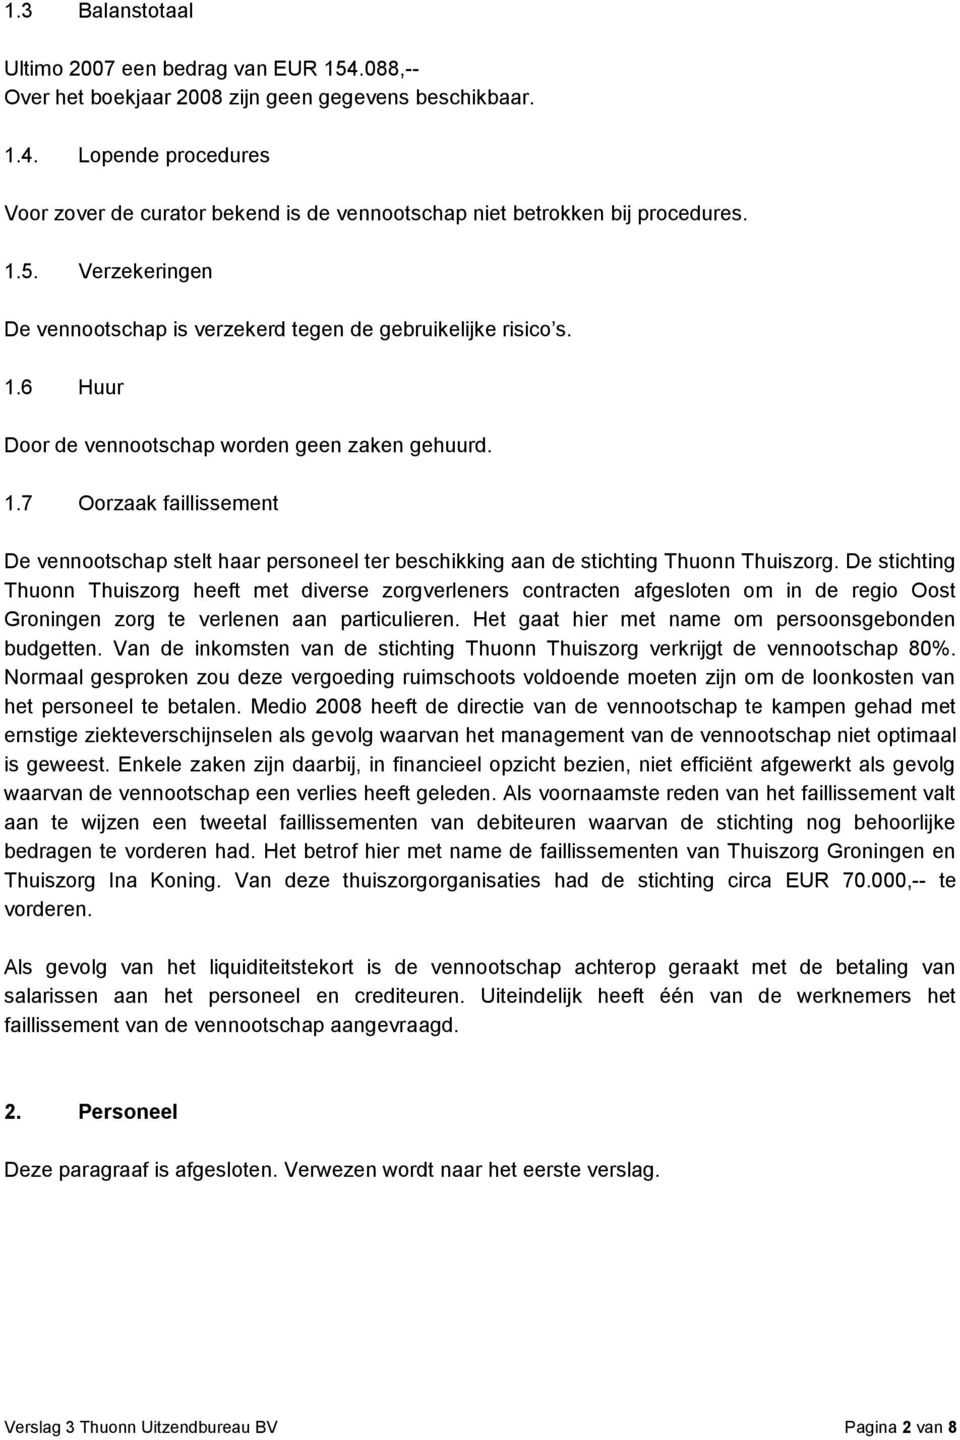 De stichting Thuonn Thuiszorg heeft met diverse zorgverleners contracten afgesloten om in de regio Oost Groningen zorg te verlenen aan particulieren.